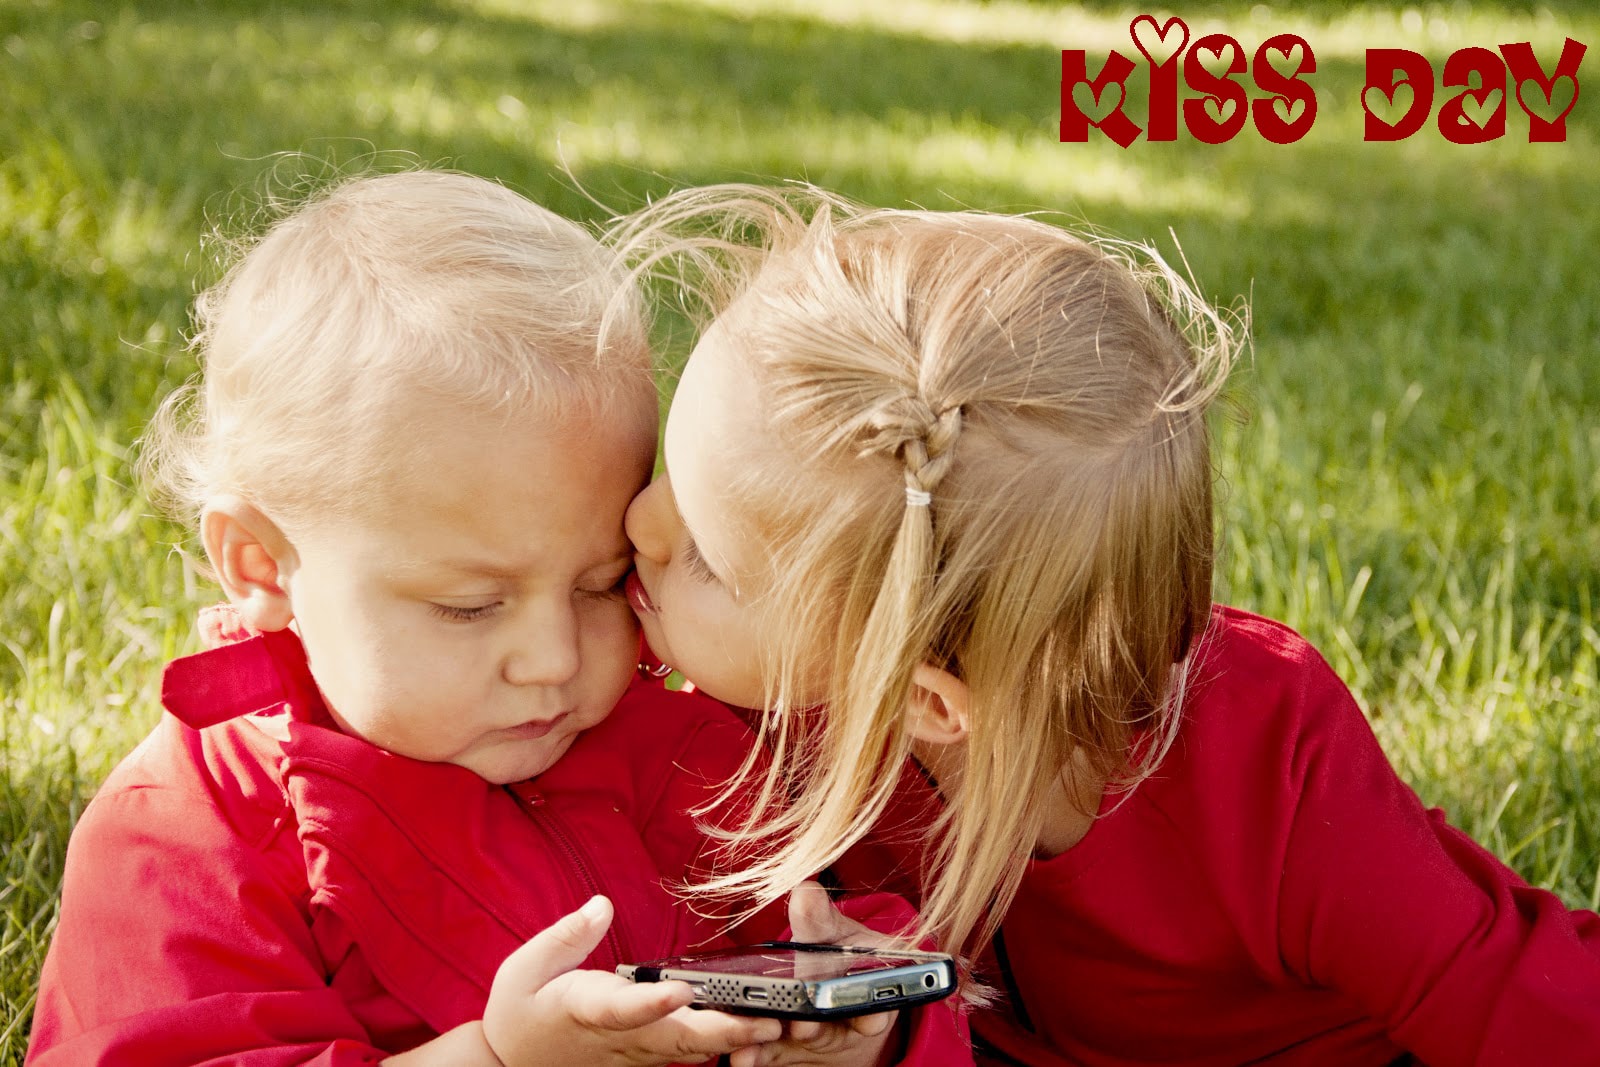 happy kiss day schöne tapeten,kind,kleinkind,liebe,glücklich,abspielen